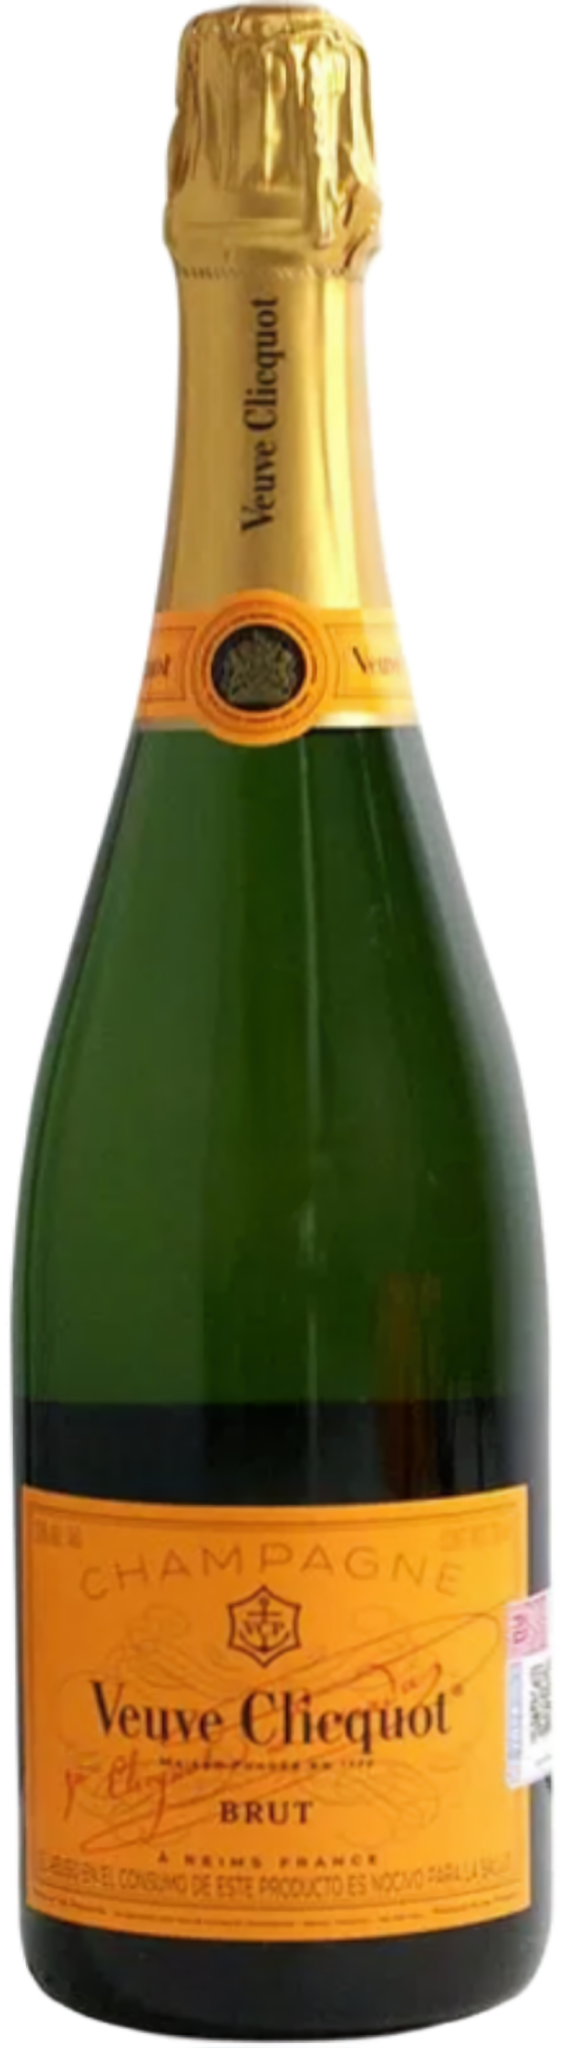 Yellow Label Champagne brut - Veuve Clicquot's signature champagne